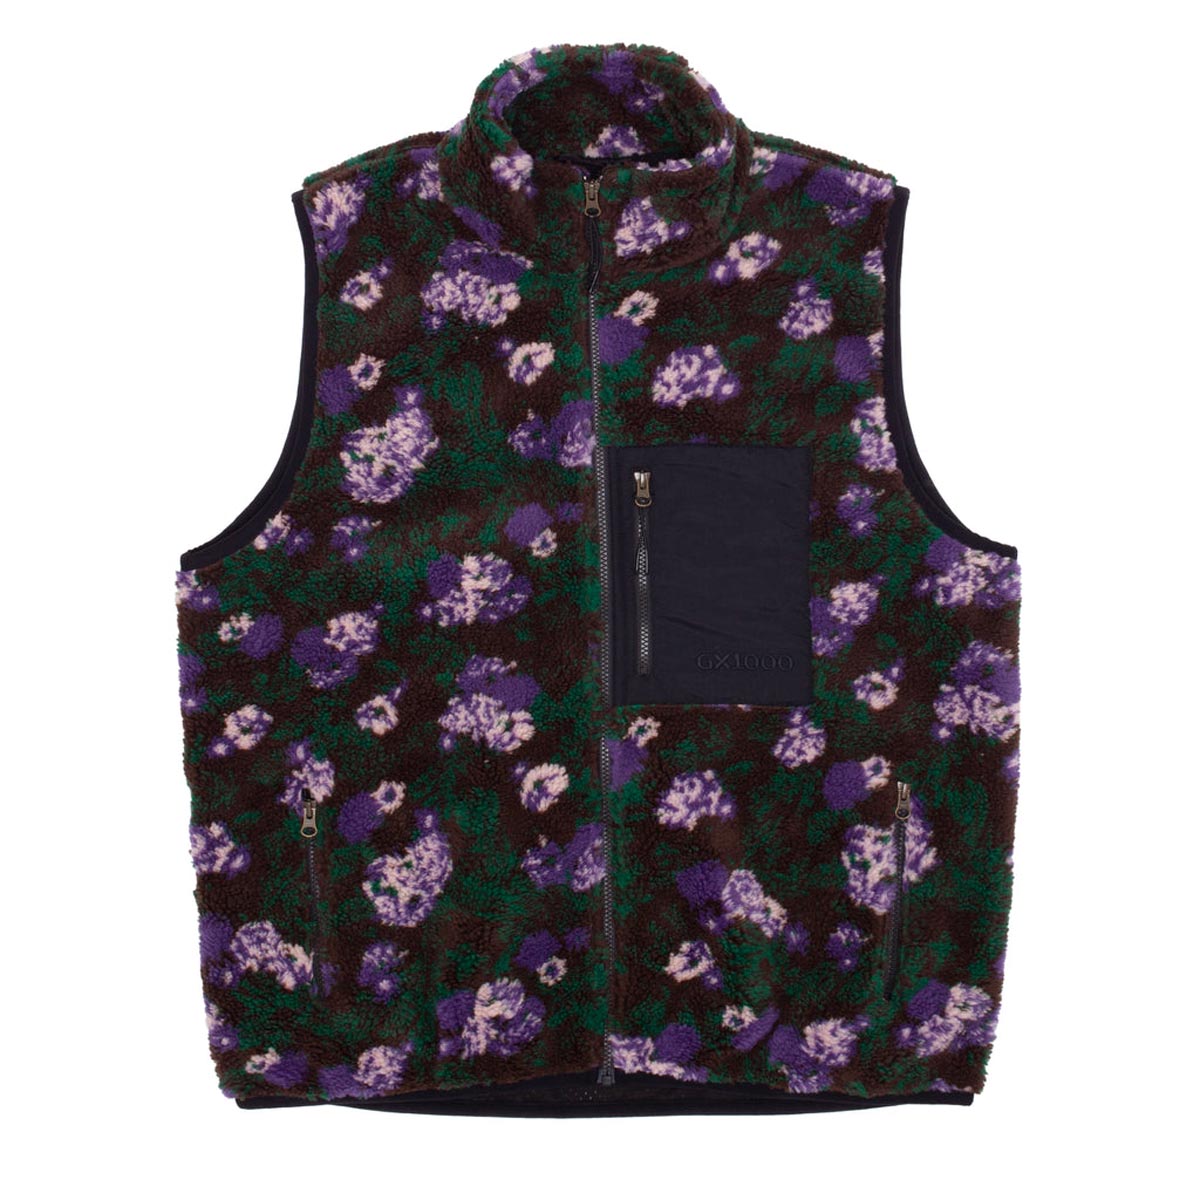 GX1000 Sherpa Vest Jacket - Floral image 1